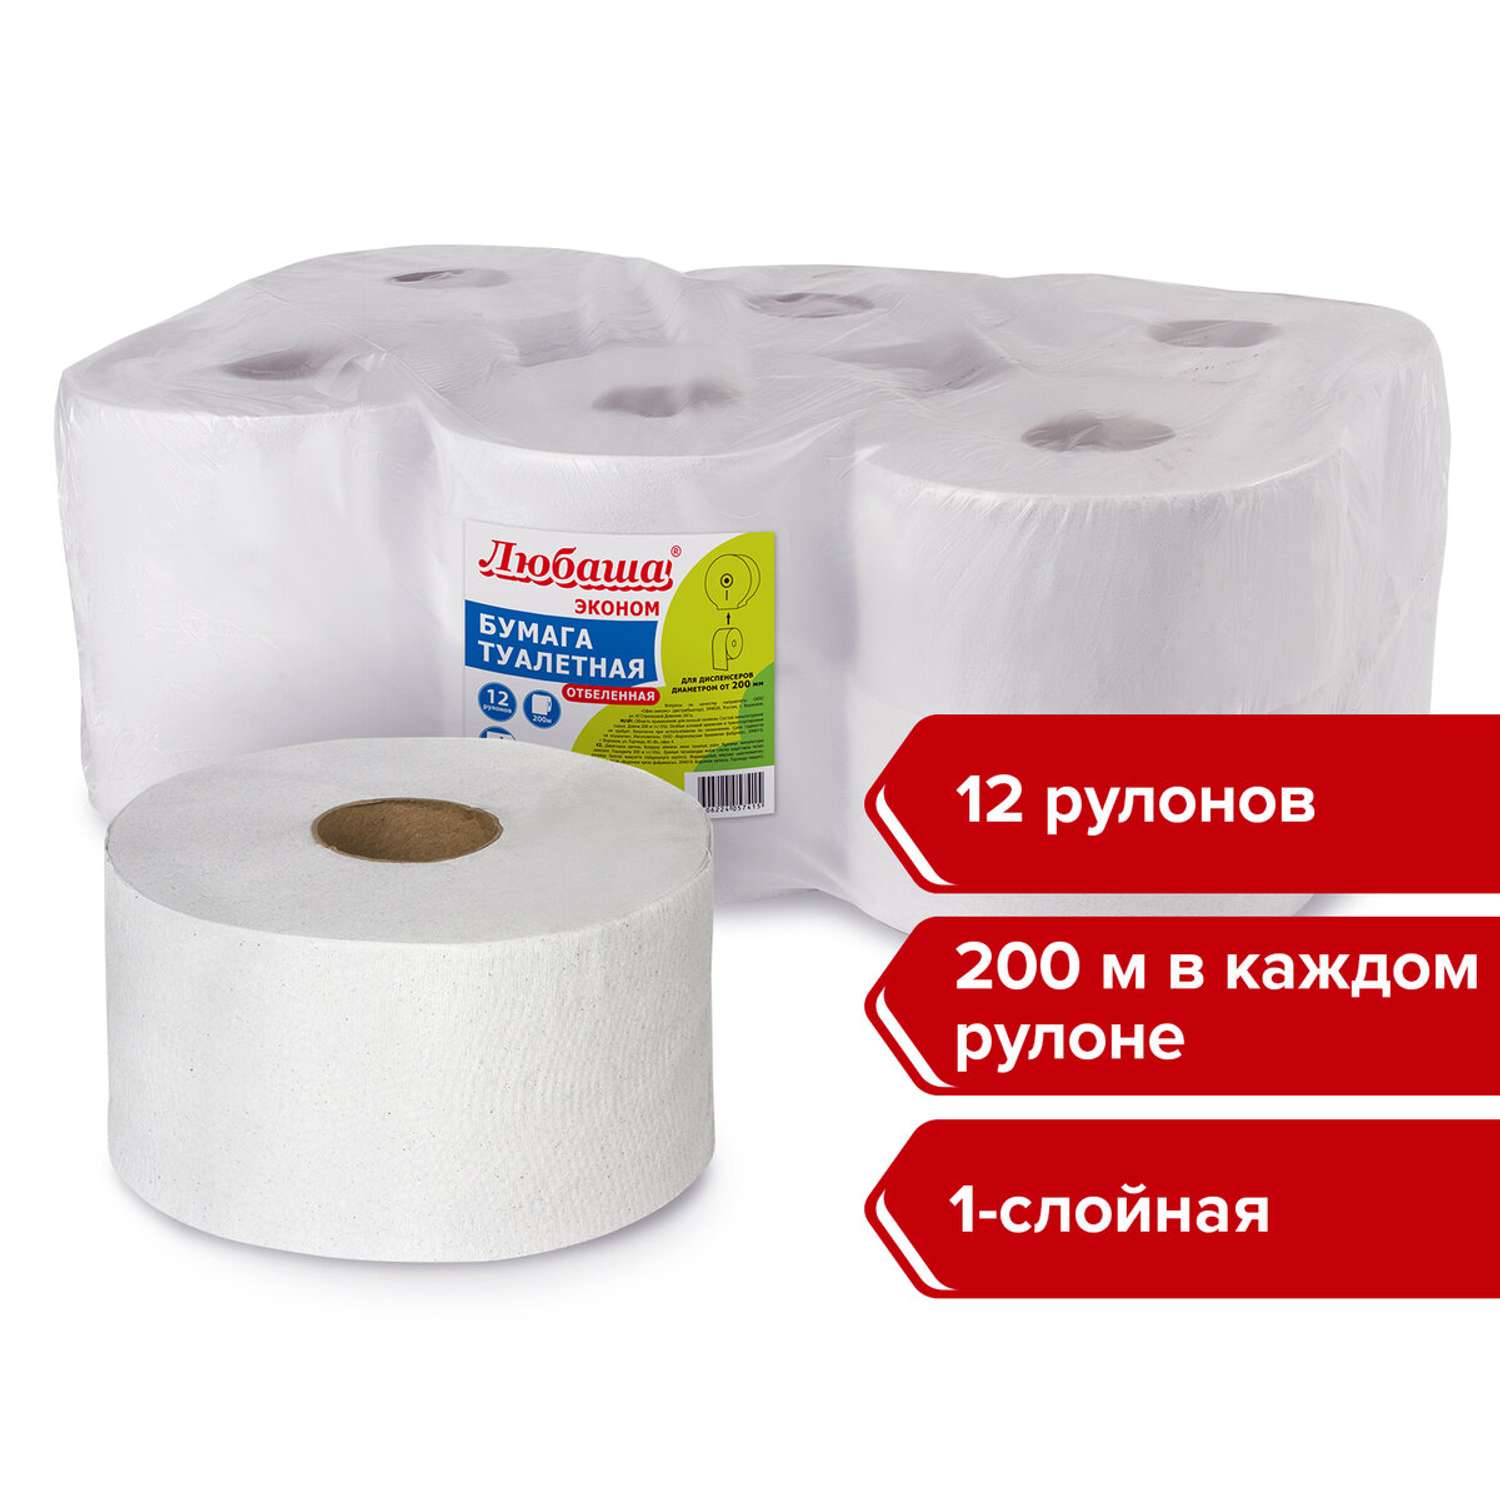 Туалетная бумага Любаша для диспенсера 200м отбеленная 1-слойная 12 рулонов Система Т2 - фото 6